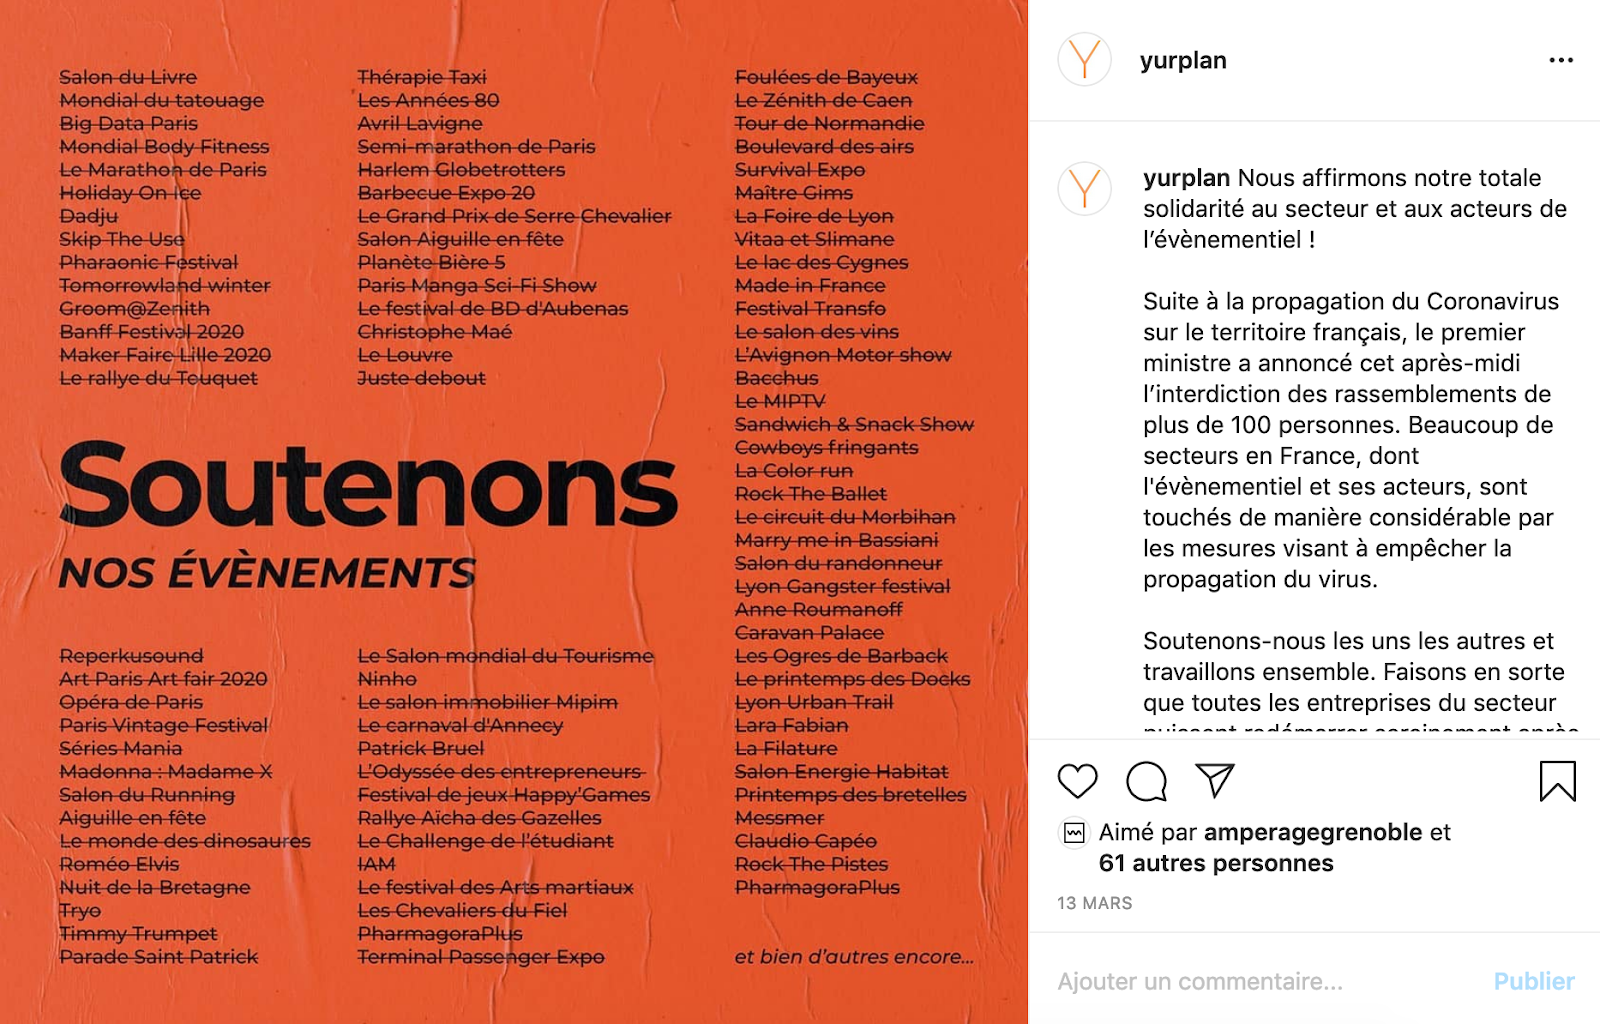 Post Instagram de solidarité de Yurplan pour le coronavirus 